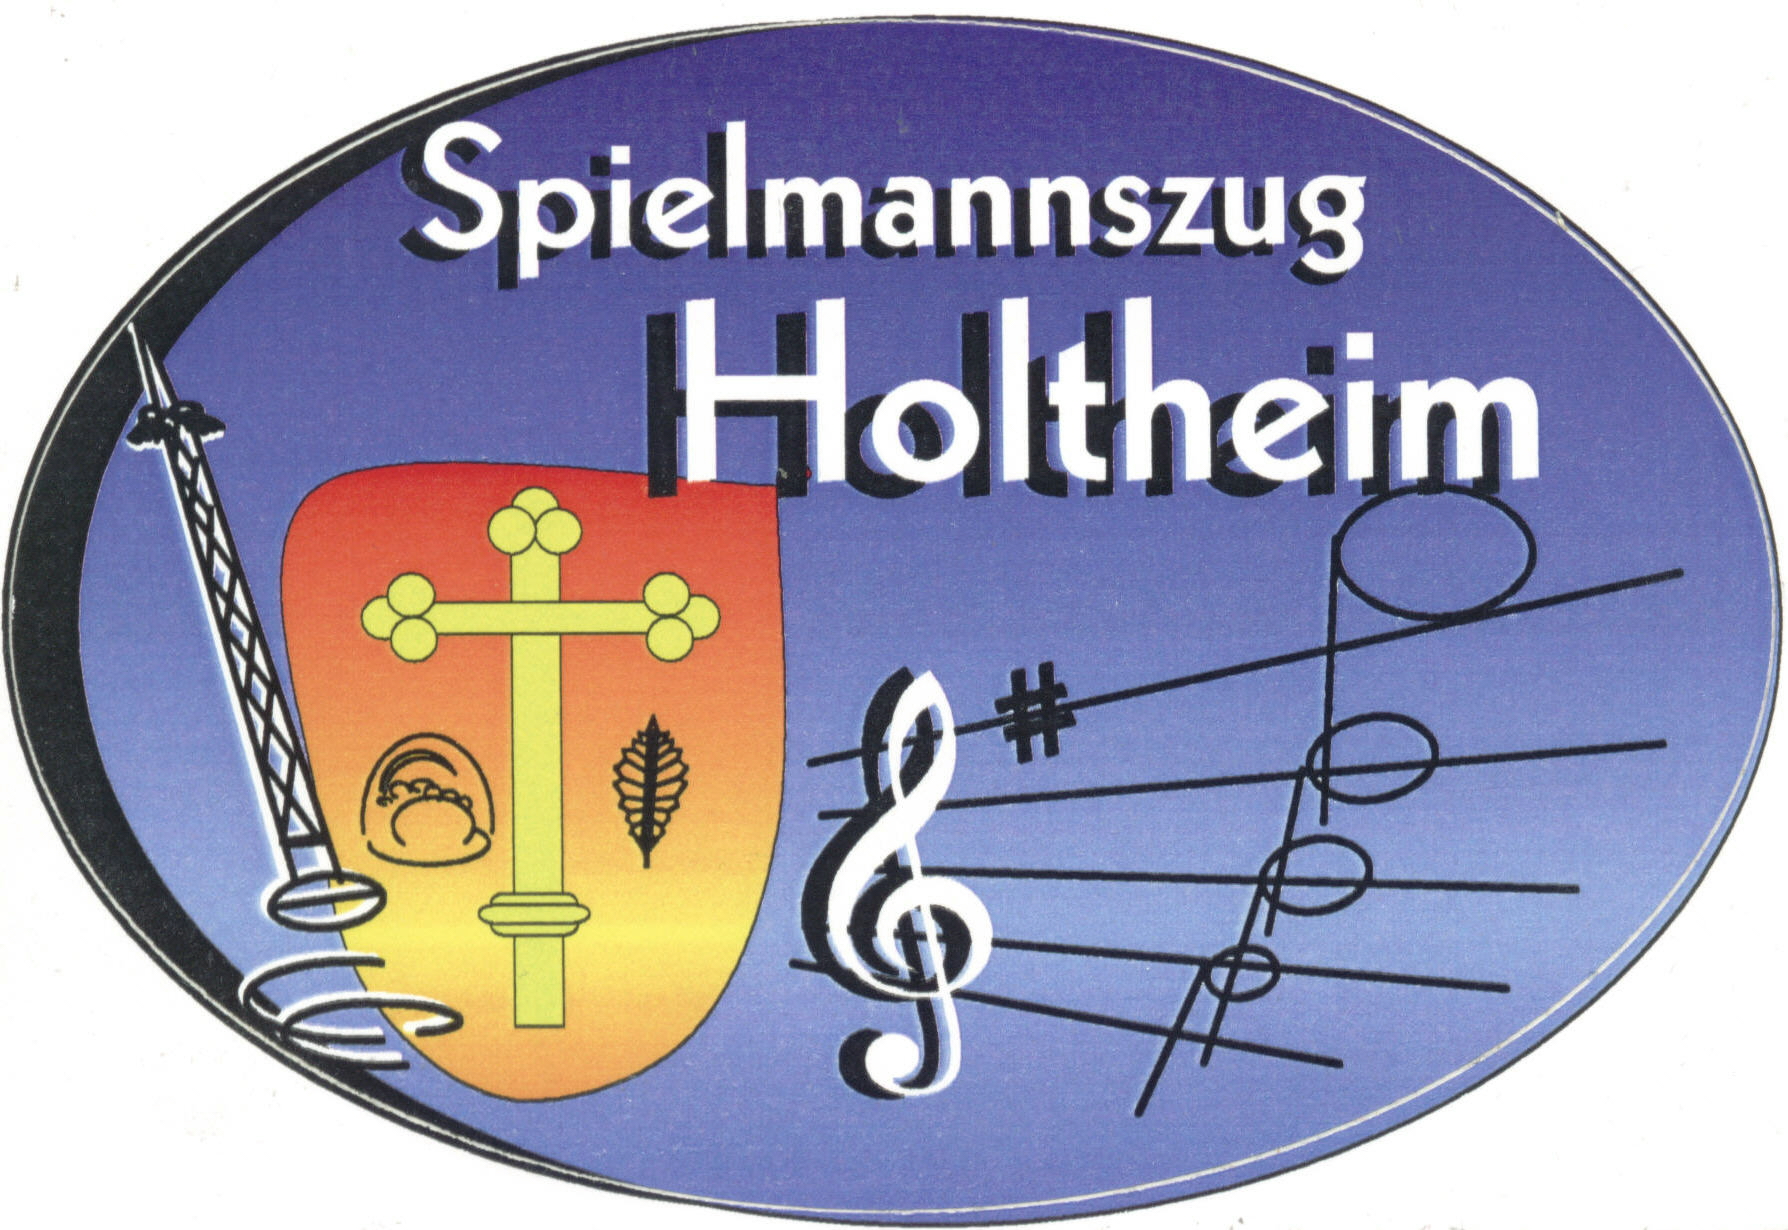 Spielmannszug Holtheim